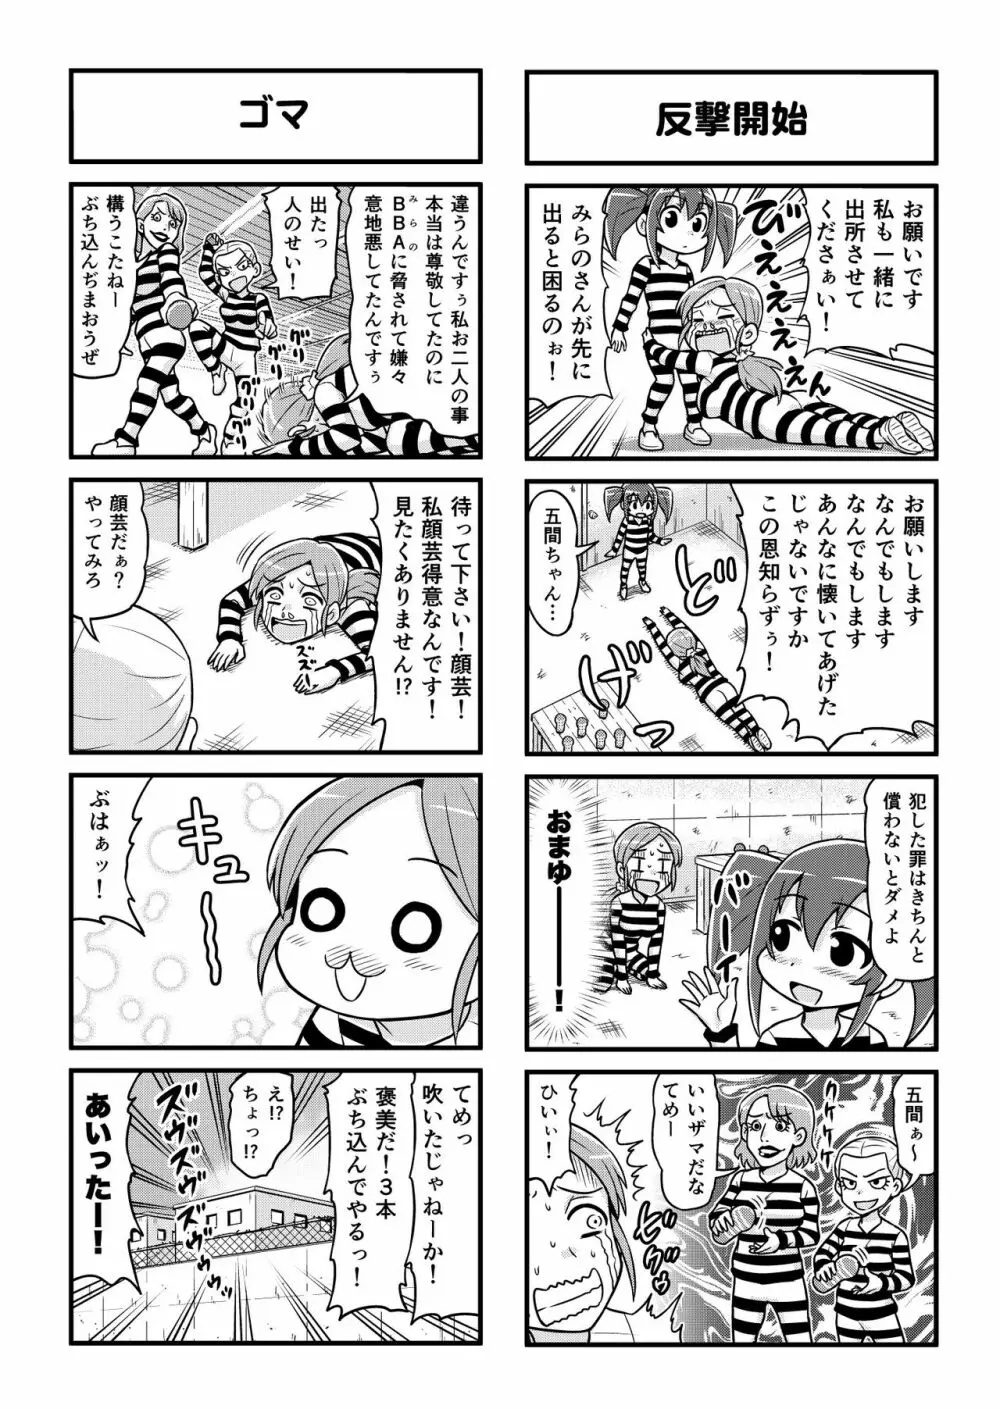 のんきBOY 1-39 251ページ